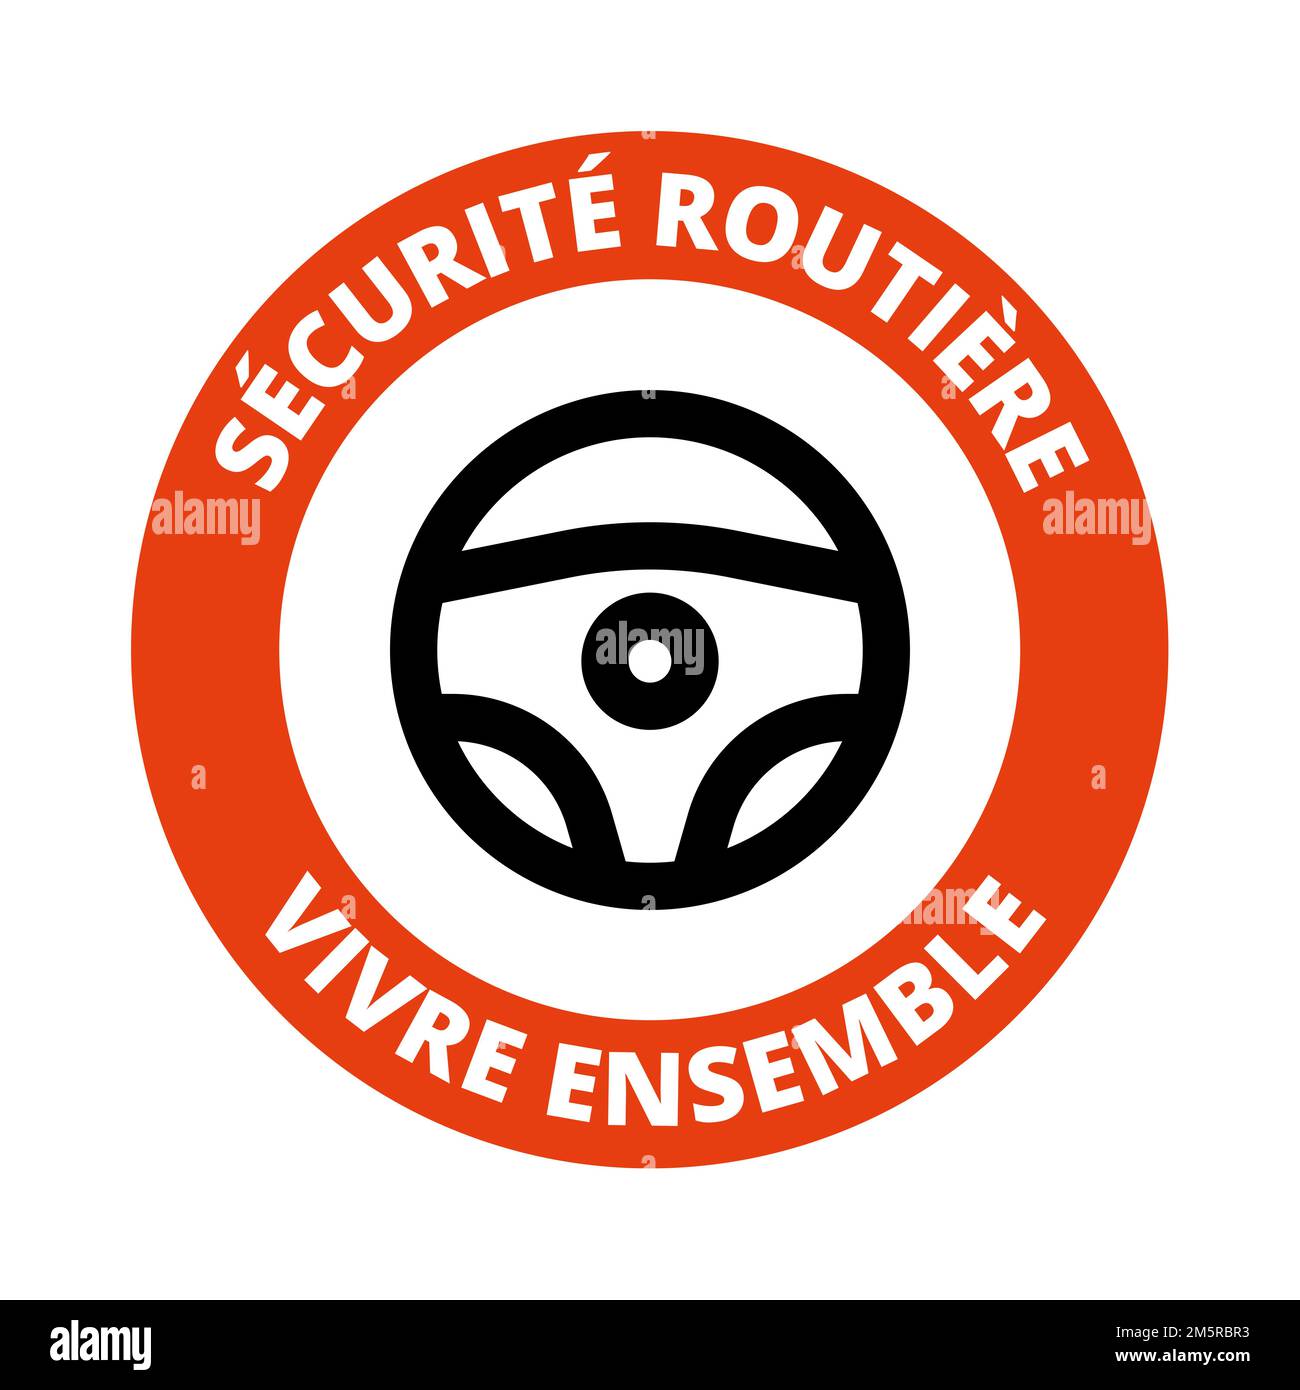 Le slogan "sécurité routière vivre ensemble" en France s'appelle securite routiere vivre ensemble en français Banque D'Images